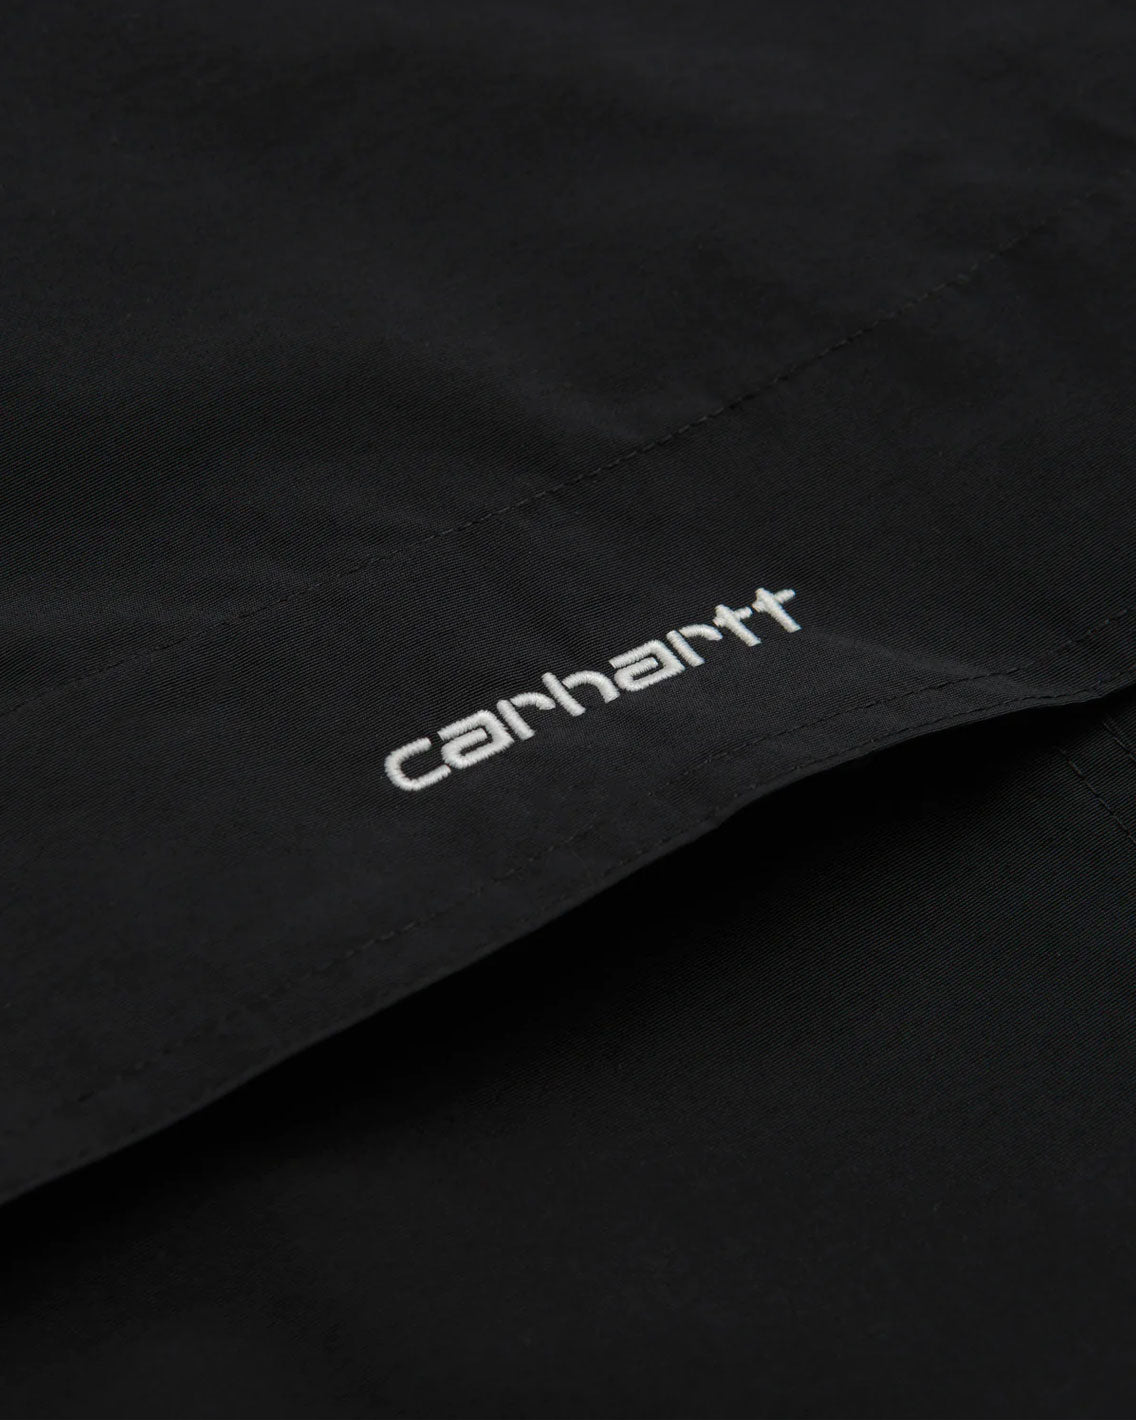 Carhartt - Windbreaker Pullover - Black / White